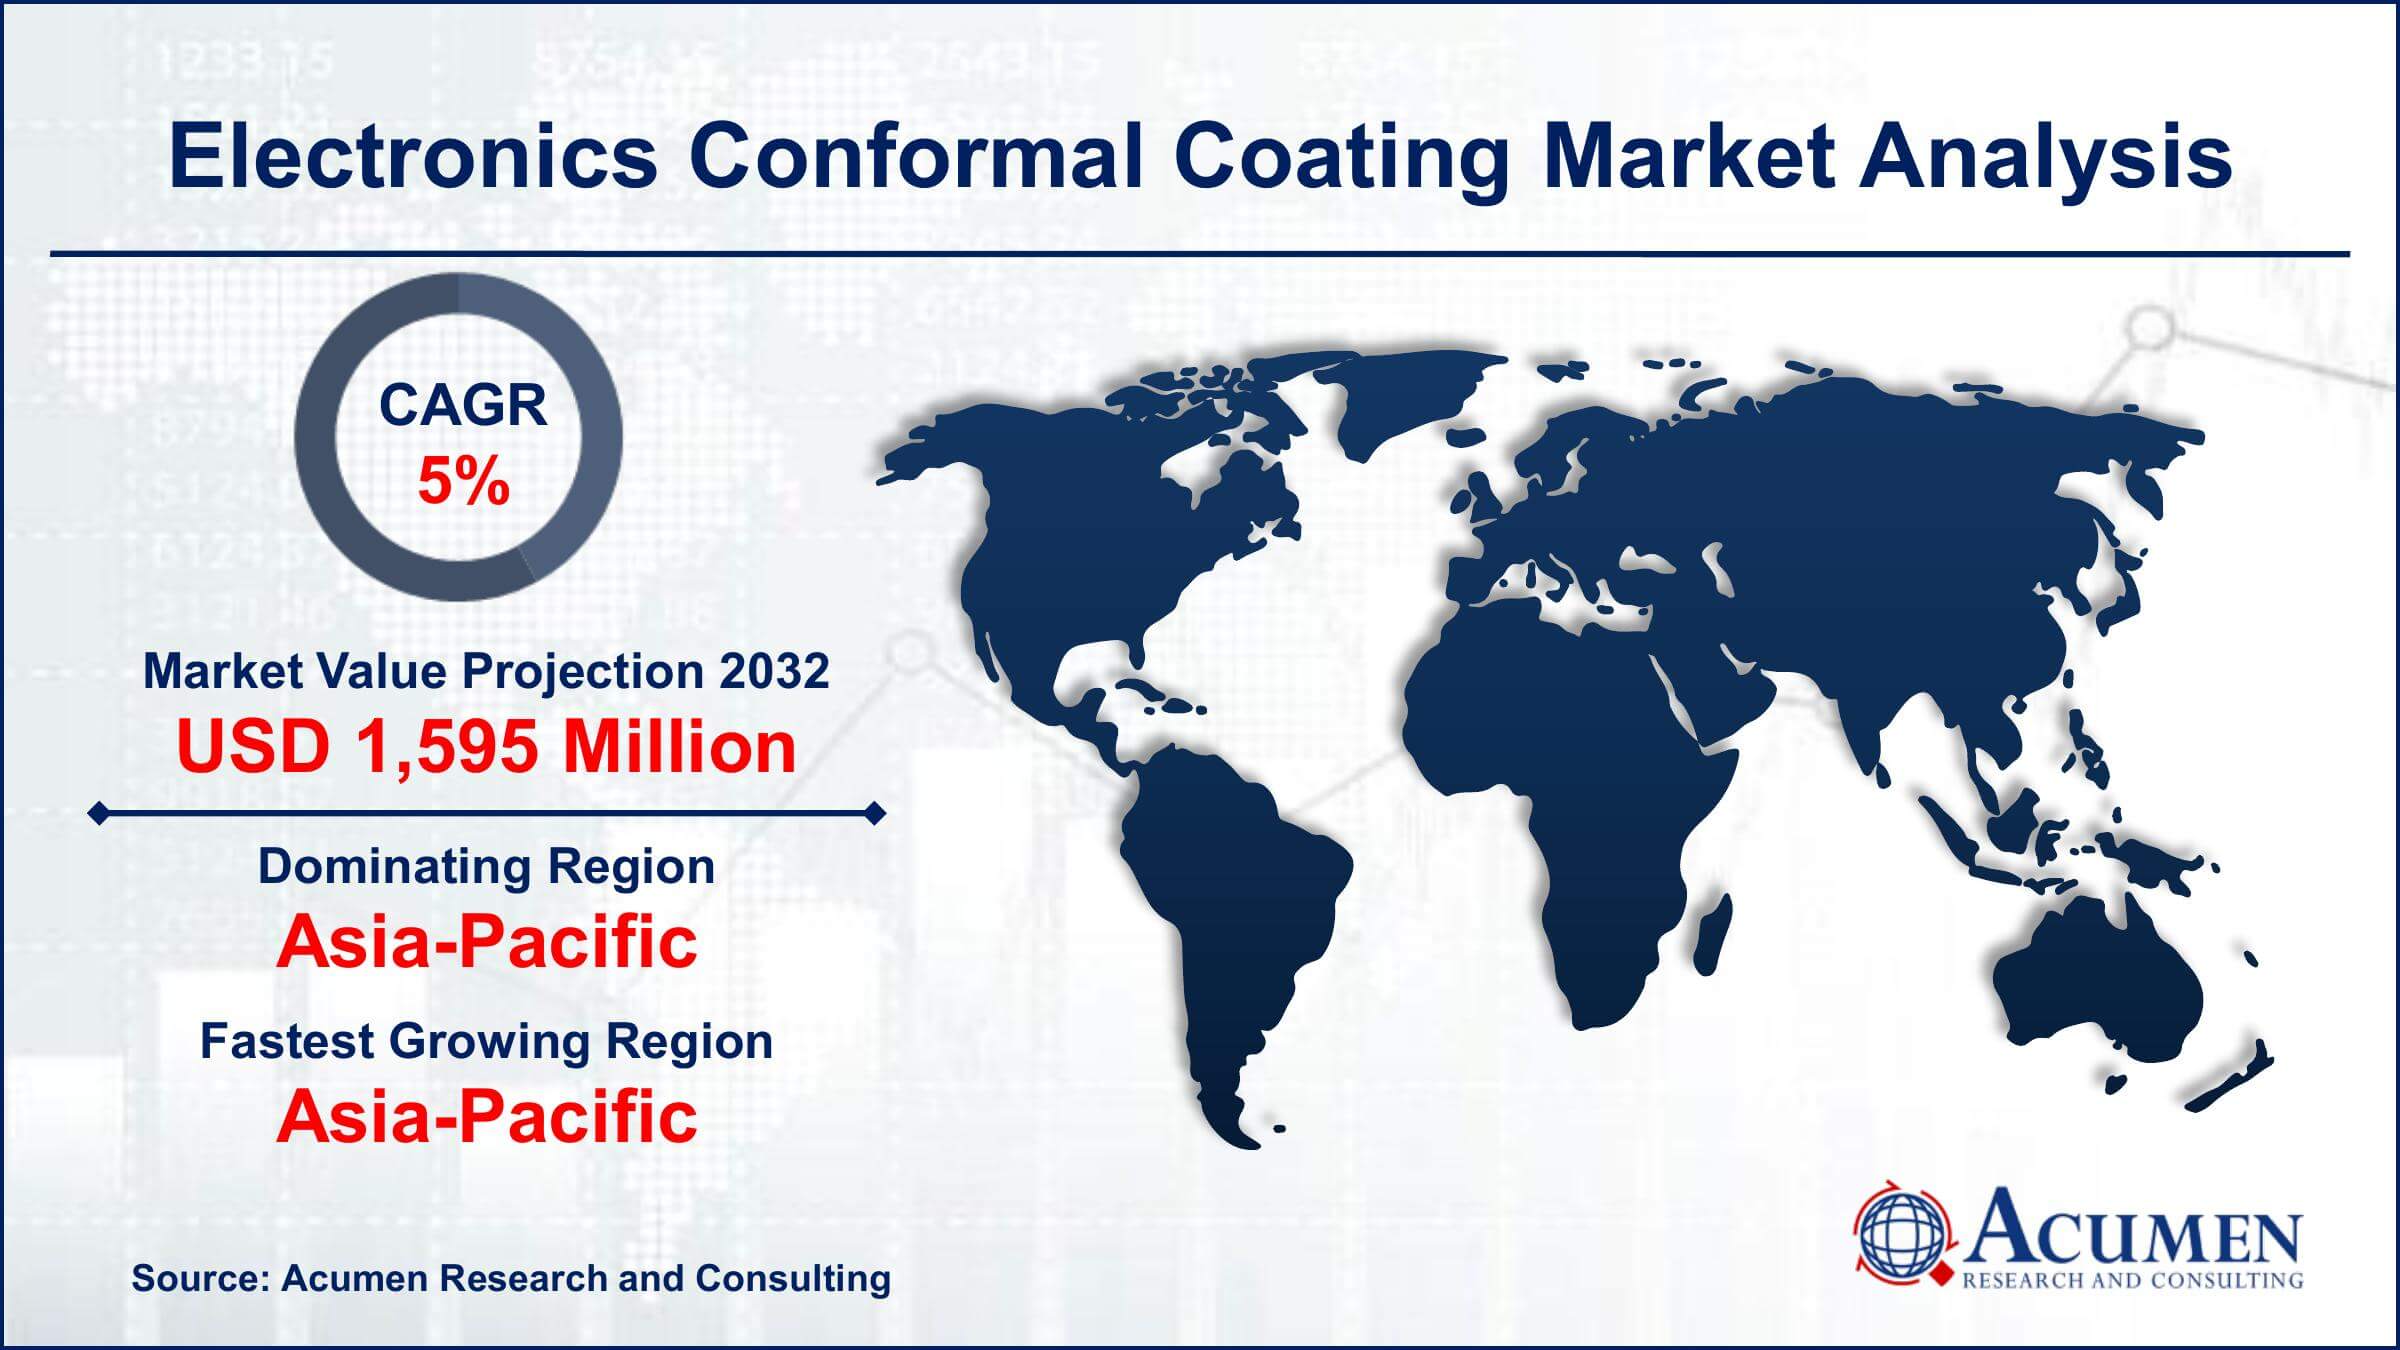 Global Electronics Conformal Coating Market Trends